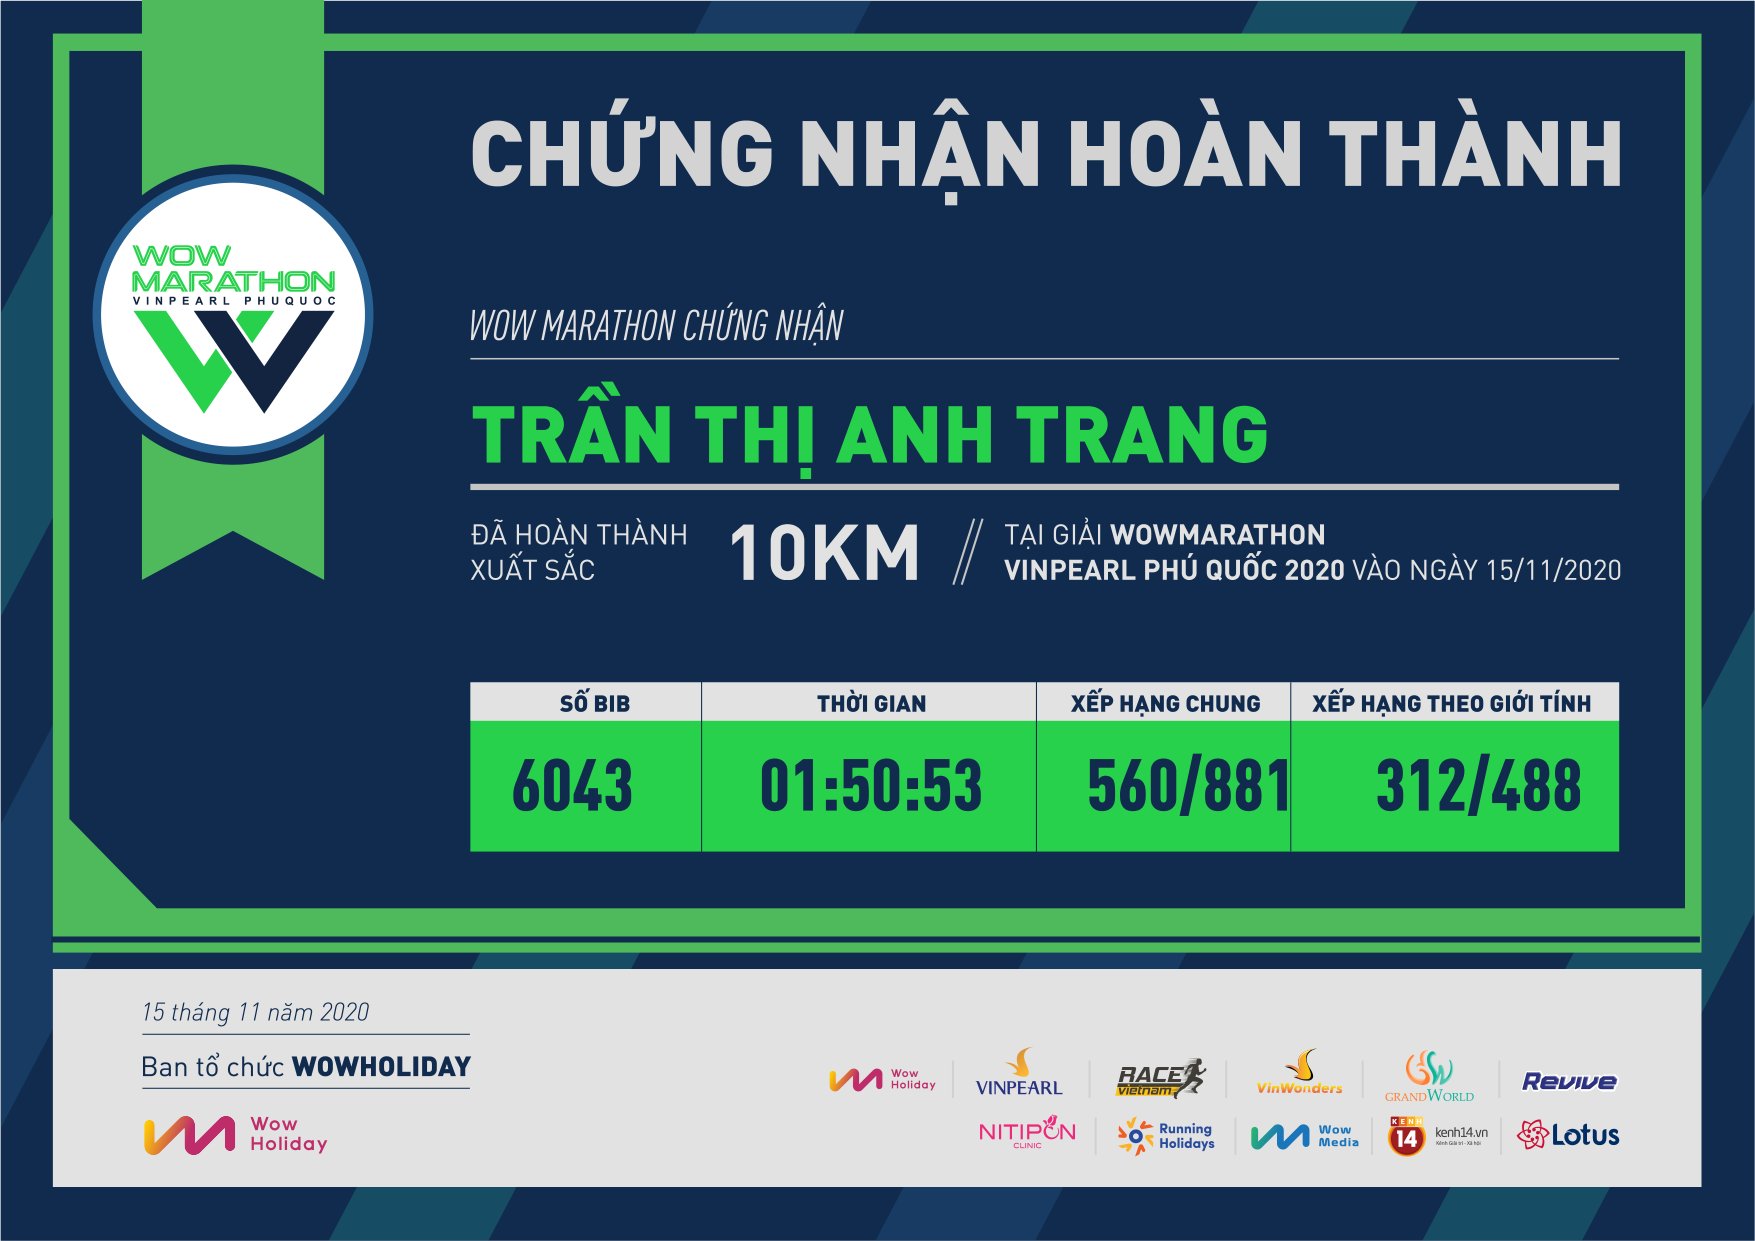 6043 - Trần Thị Anh Trang